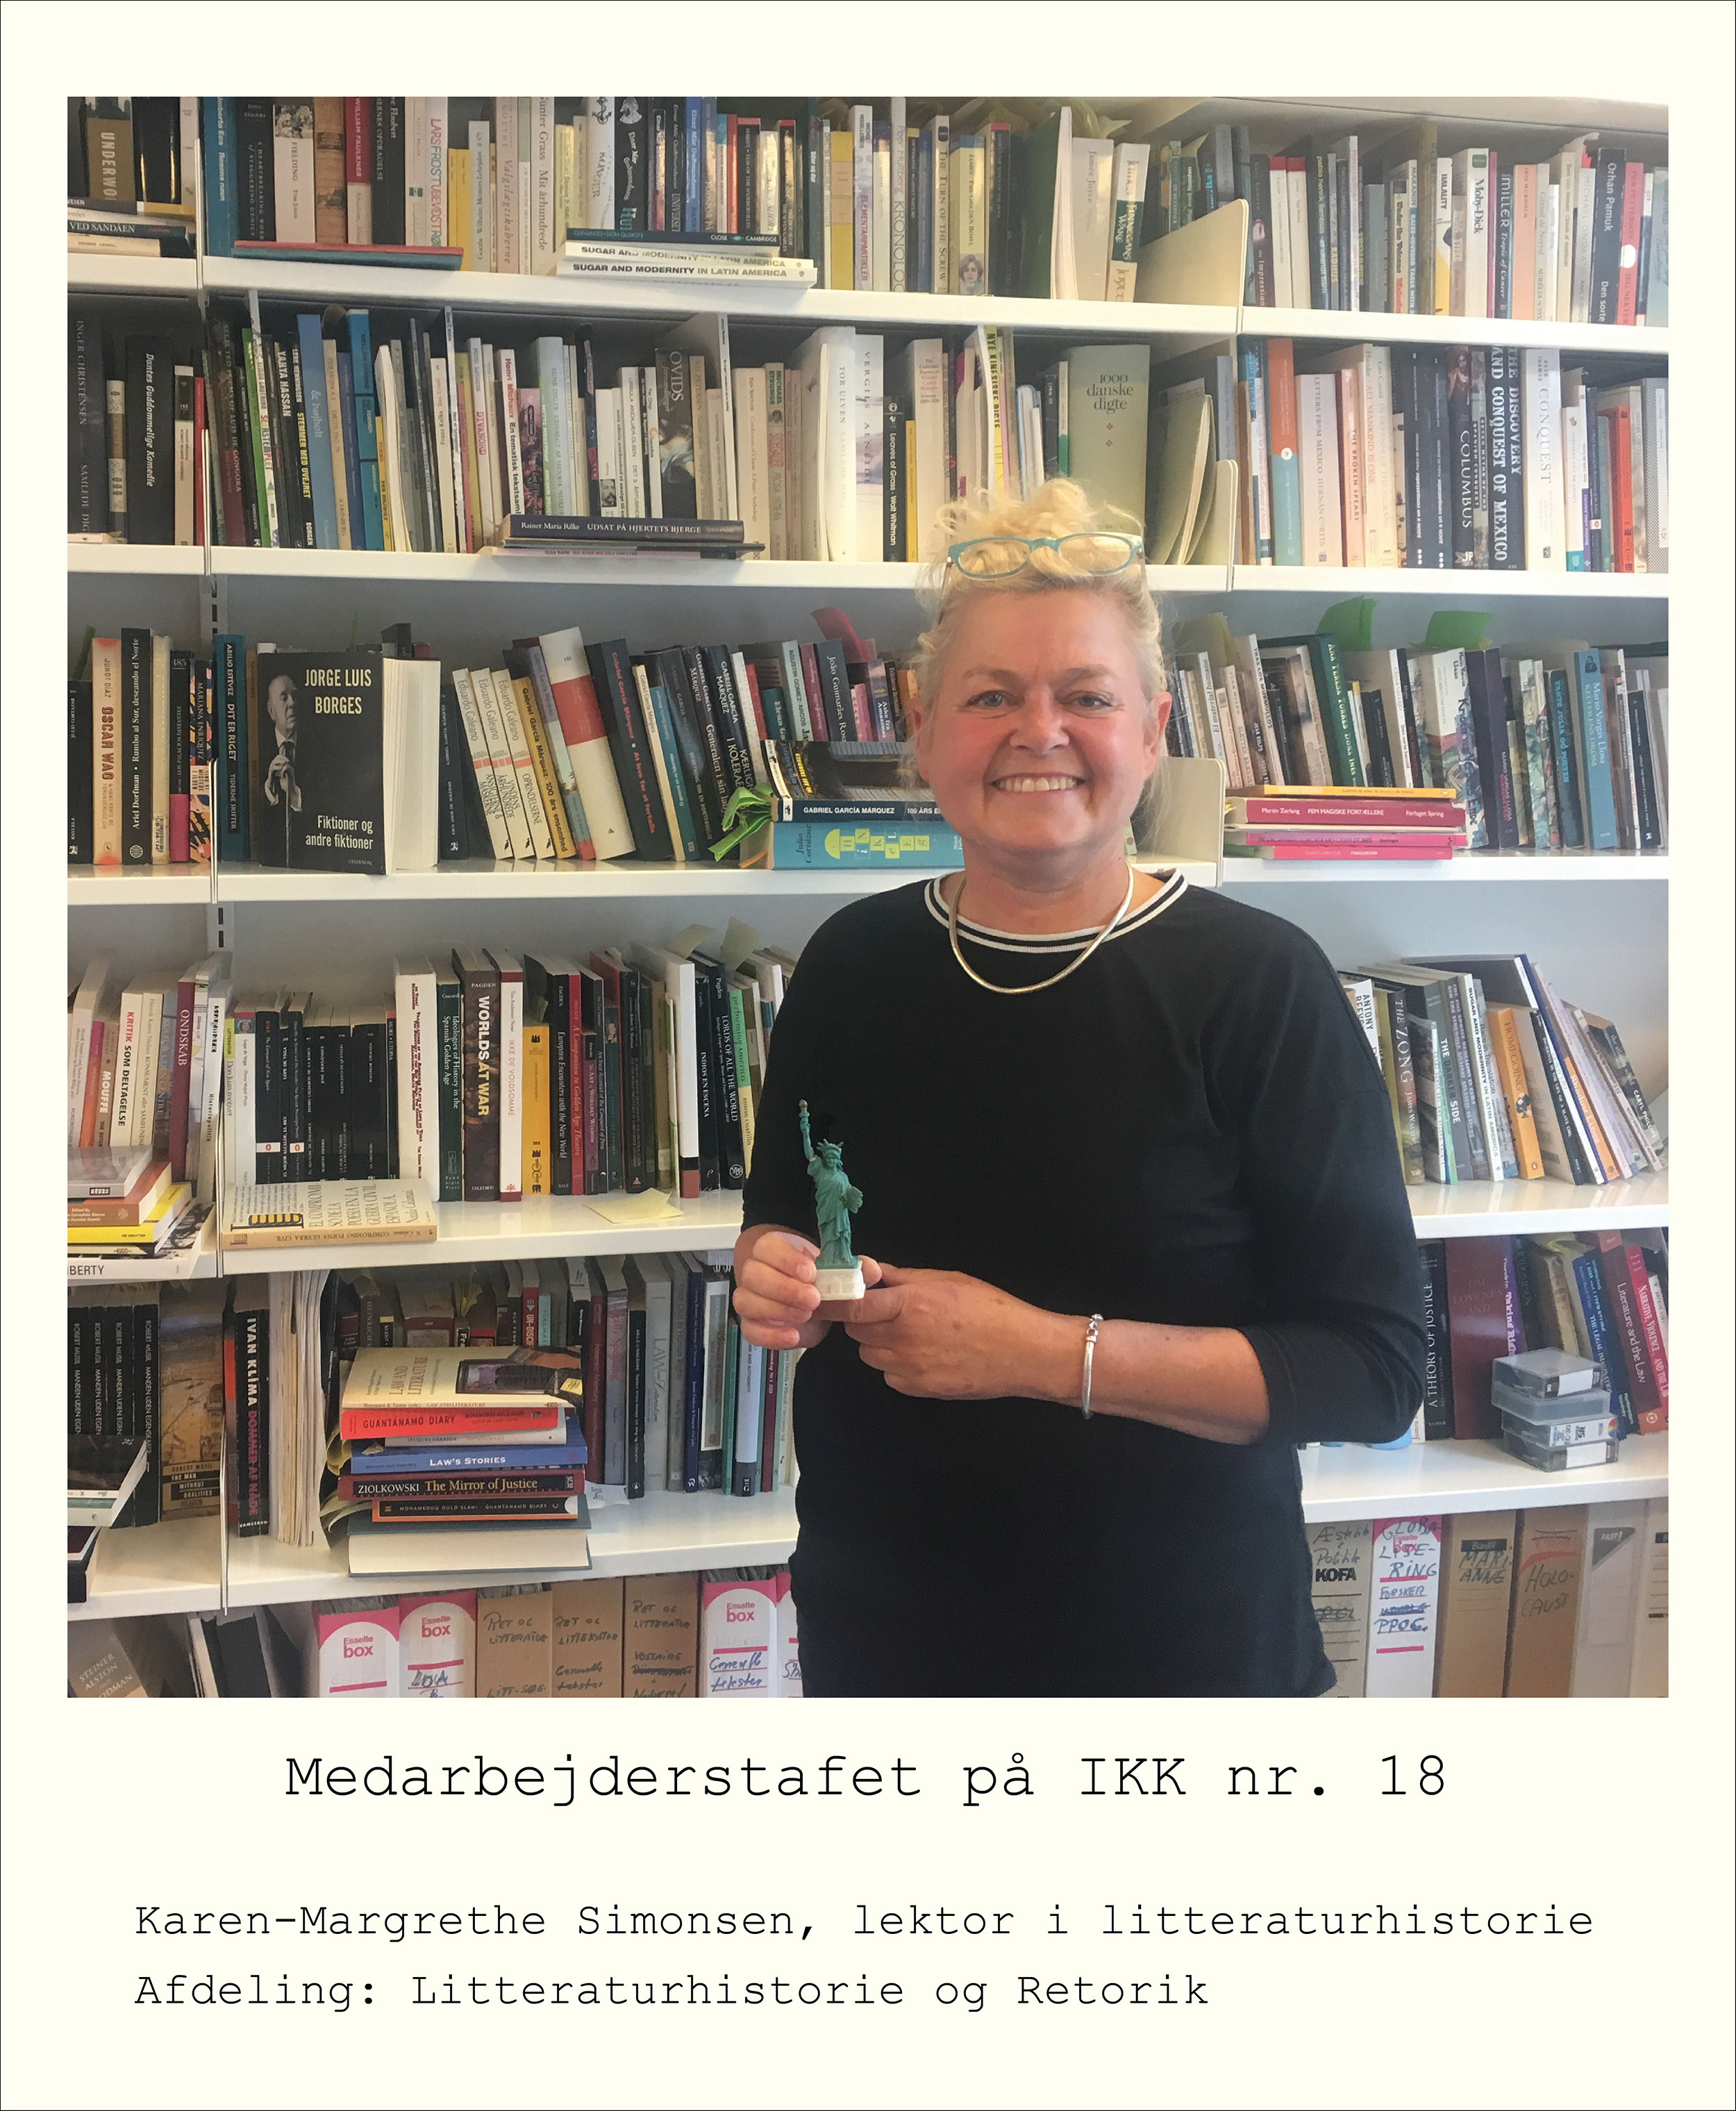 Karen-Margrethe Simonsen, lektor i litteraturhistorie, Aarhus Universitet, på sit kontor.